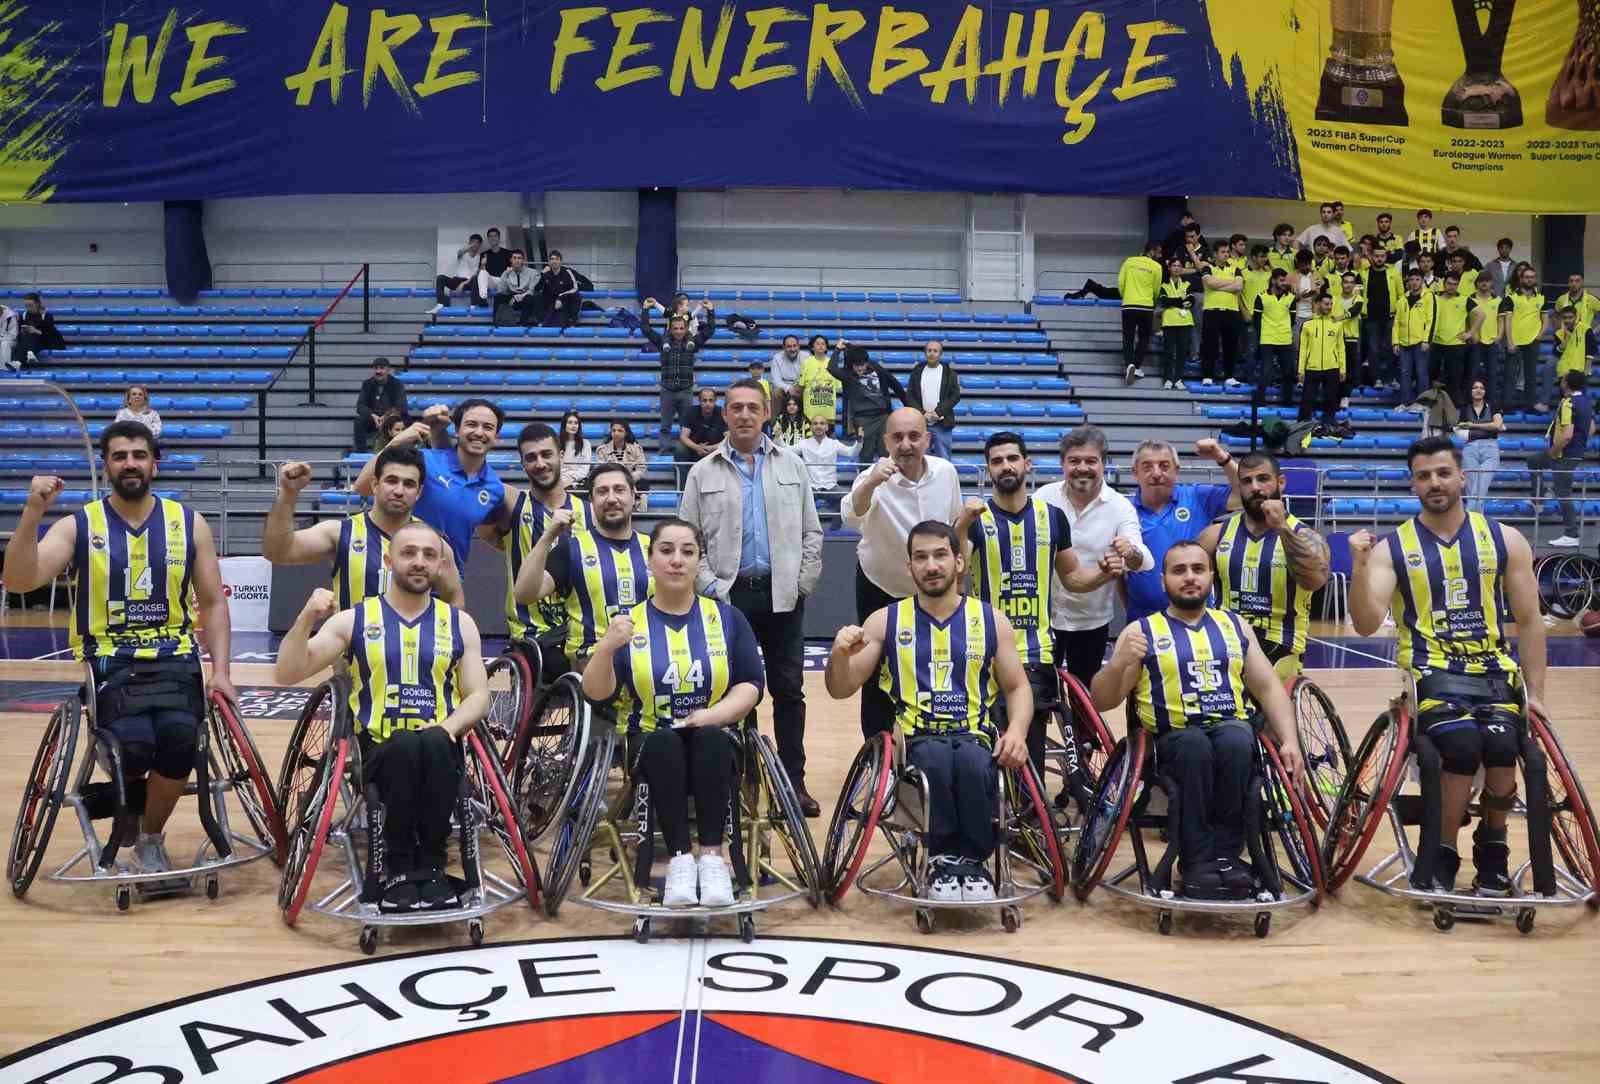 avrupa sampiyonu fenerbahce tekerlekli sandalye basketbol takimi ligde finale yukseldi 0 JIdIcnOi